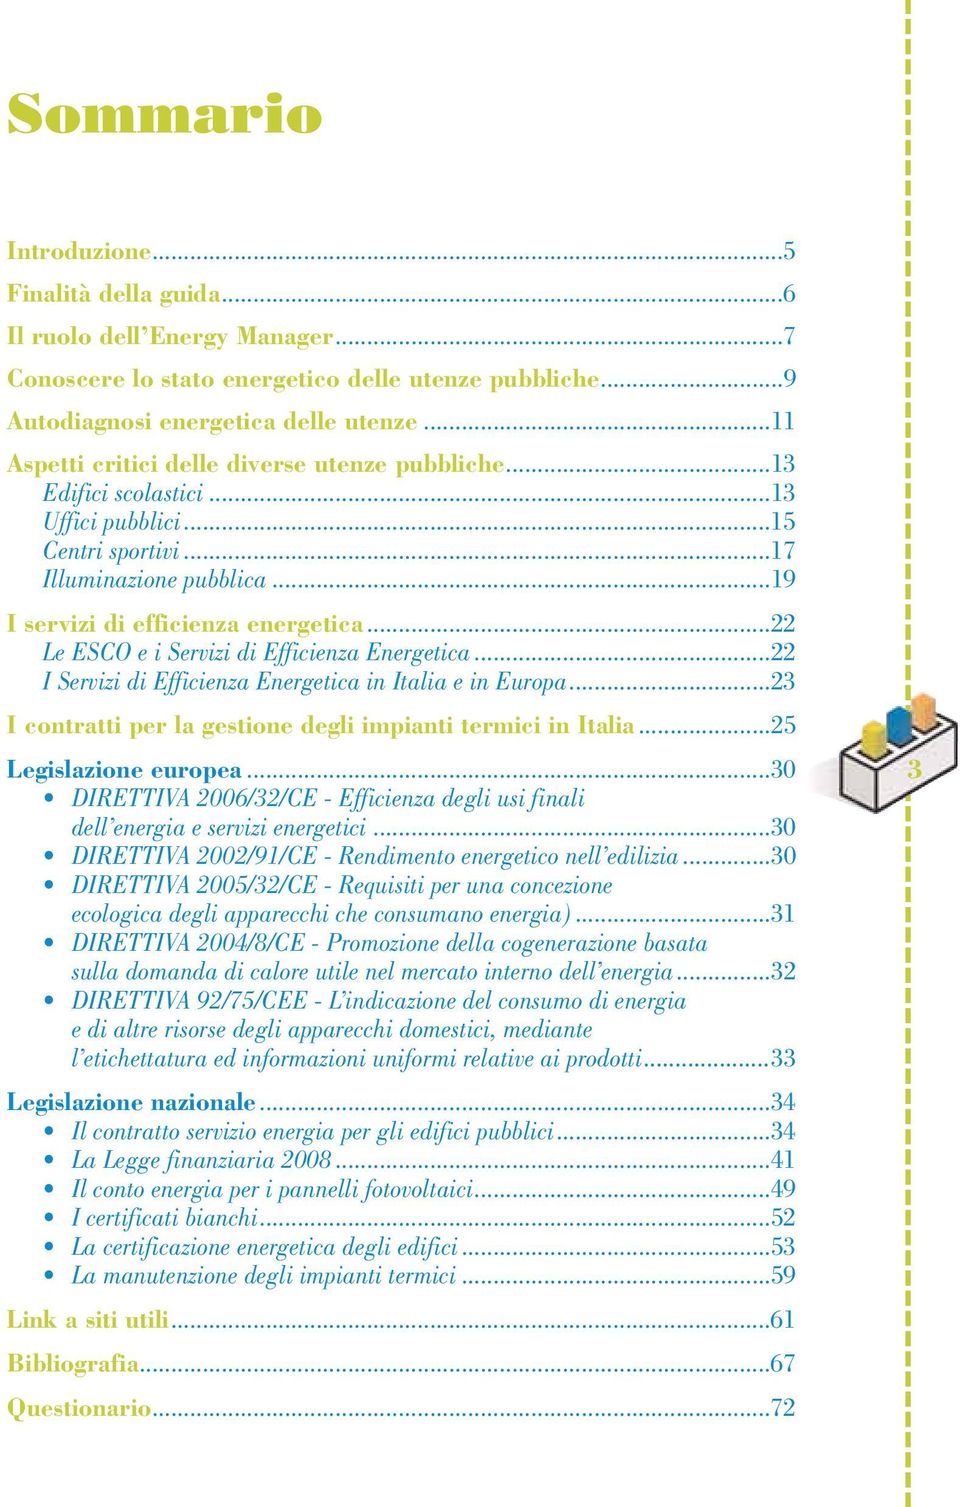 ..22 Le ESCO e i Servizi di Efficienza Energetica...22 I Servizi di Efficienza Energetica in Italia e in Europa...23 I contratti per la gestione degli impianti termici in Italia.